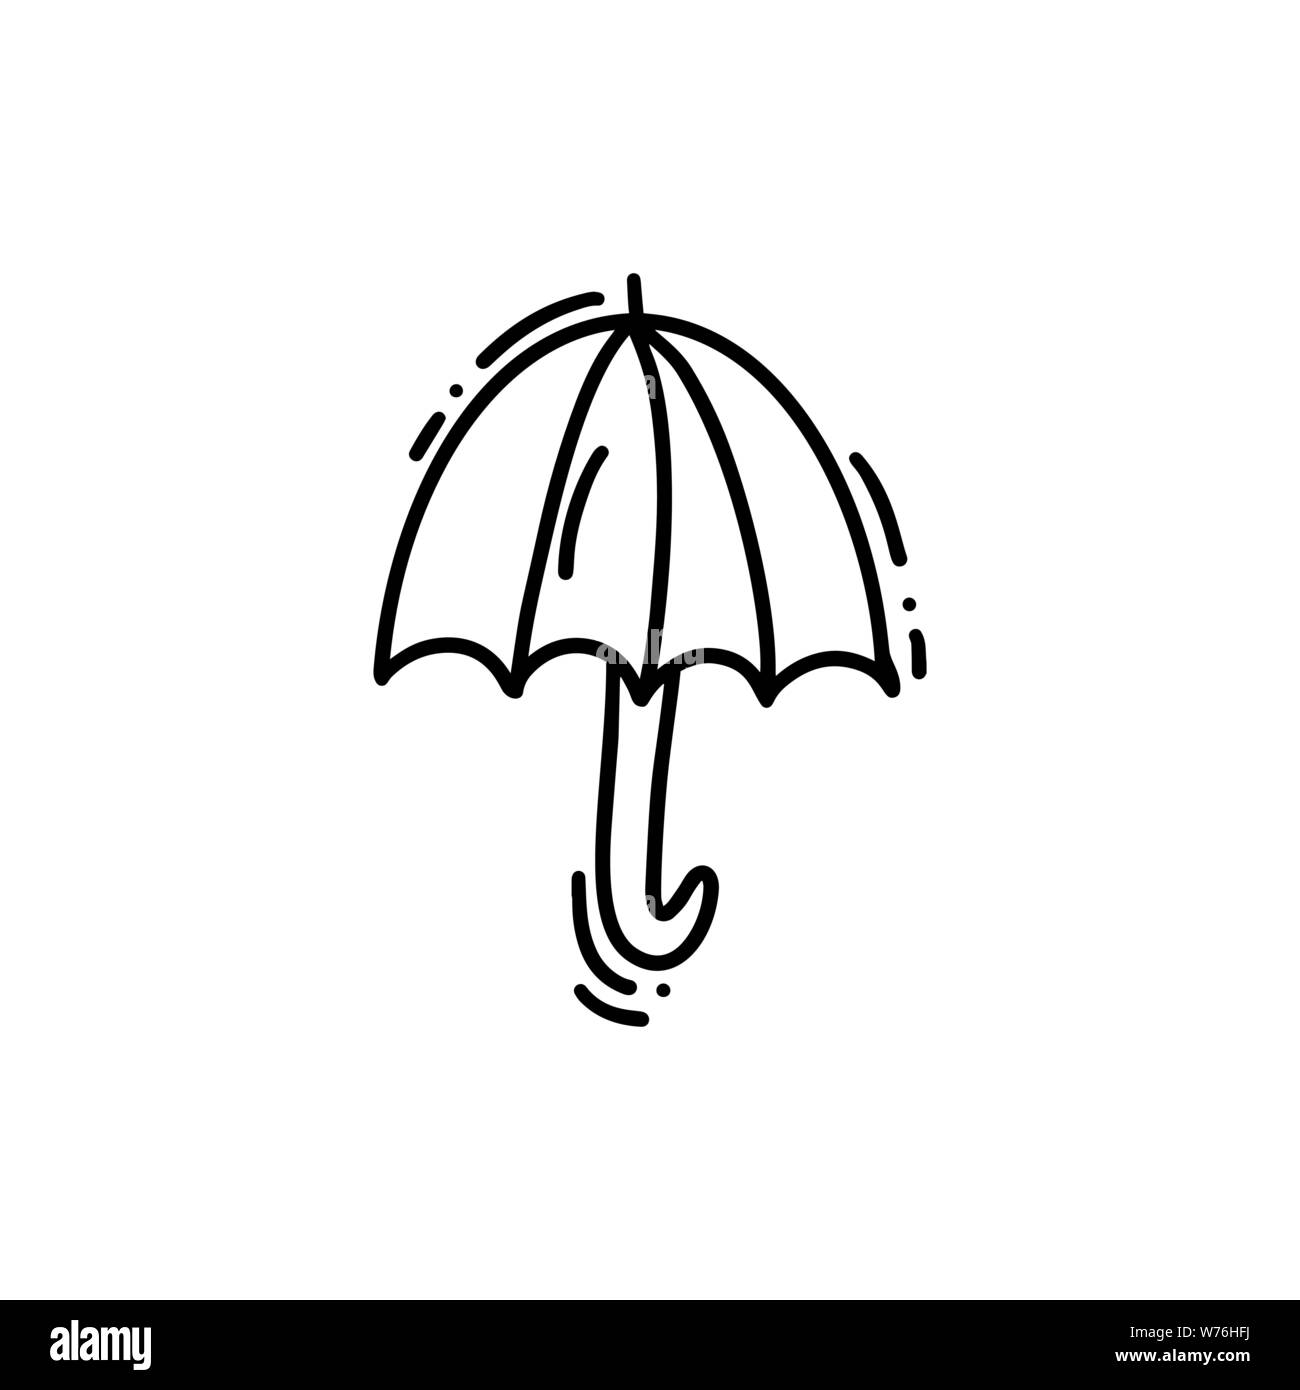 Icona di ombrello monolino. Illustrazione del logo del doodle vettoriale disegnato a mano. Schizzo isolato su sfondo bianco Illustrazione Vettoriale